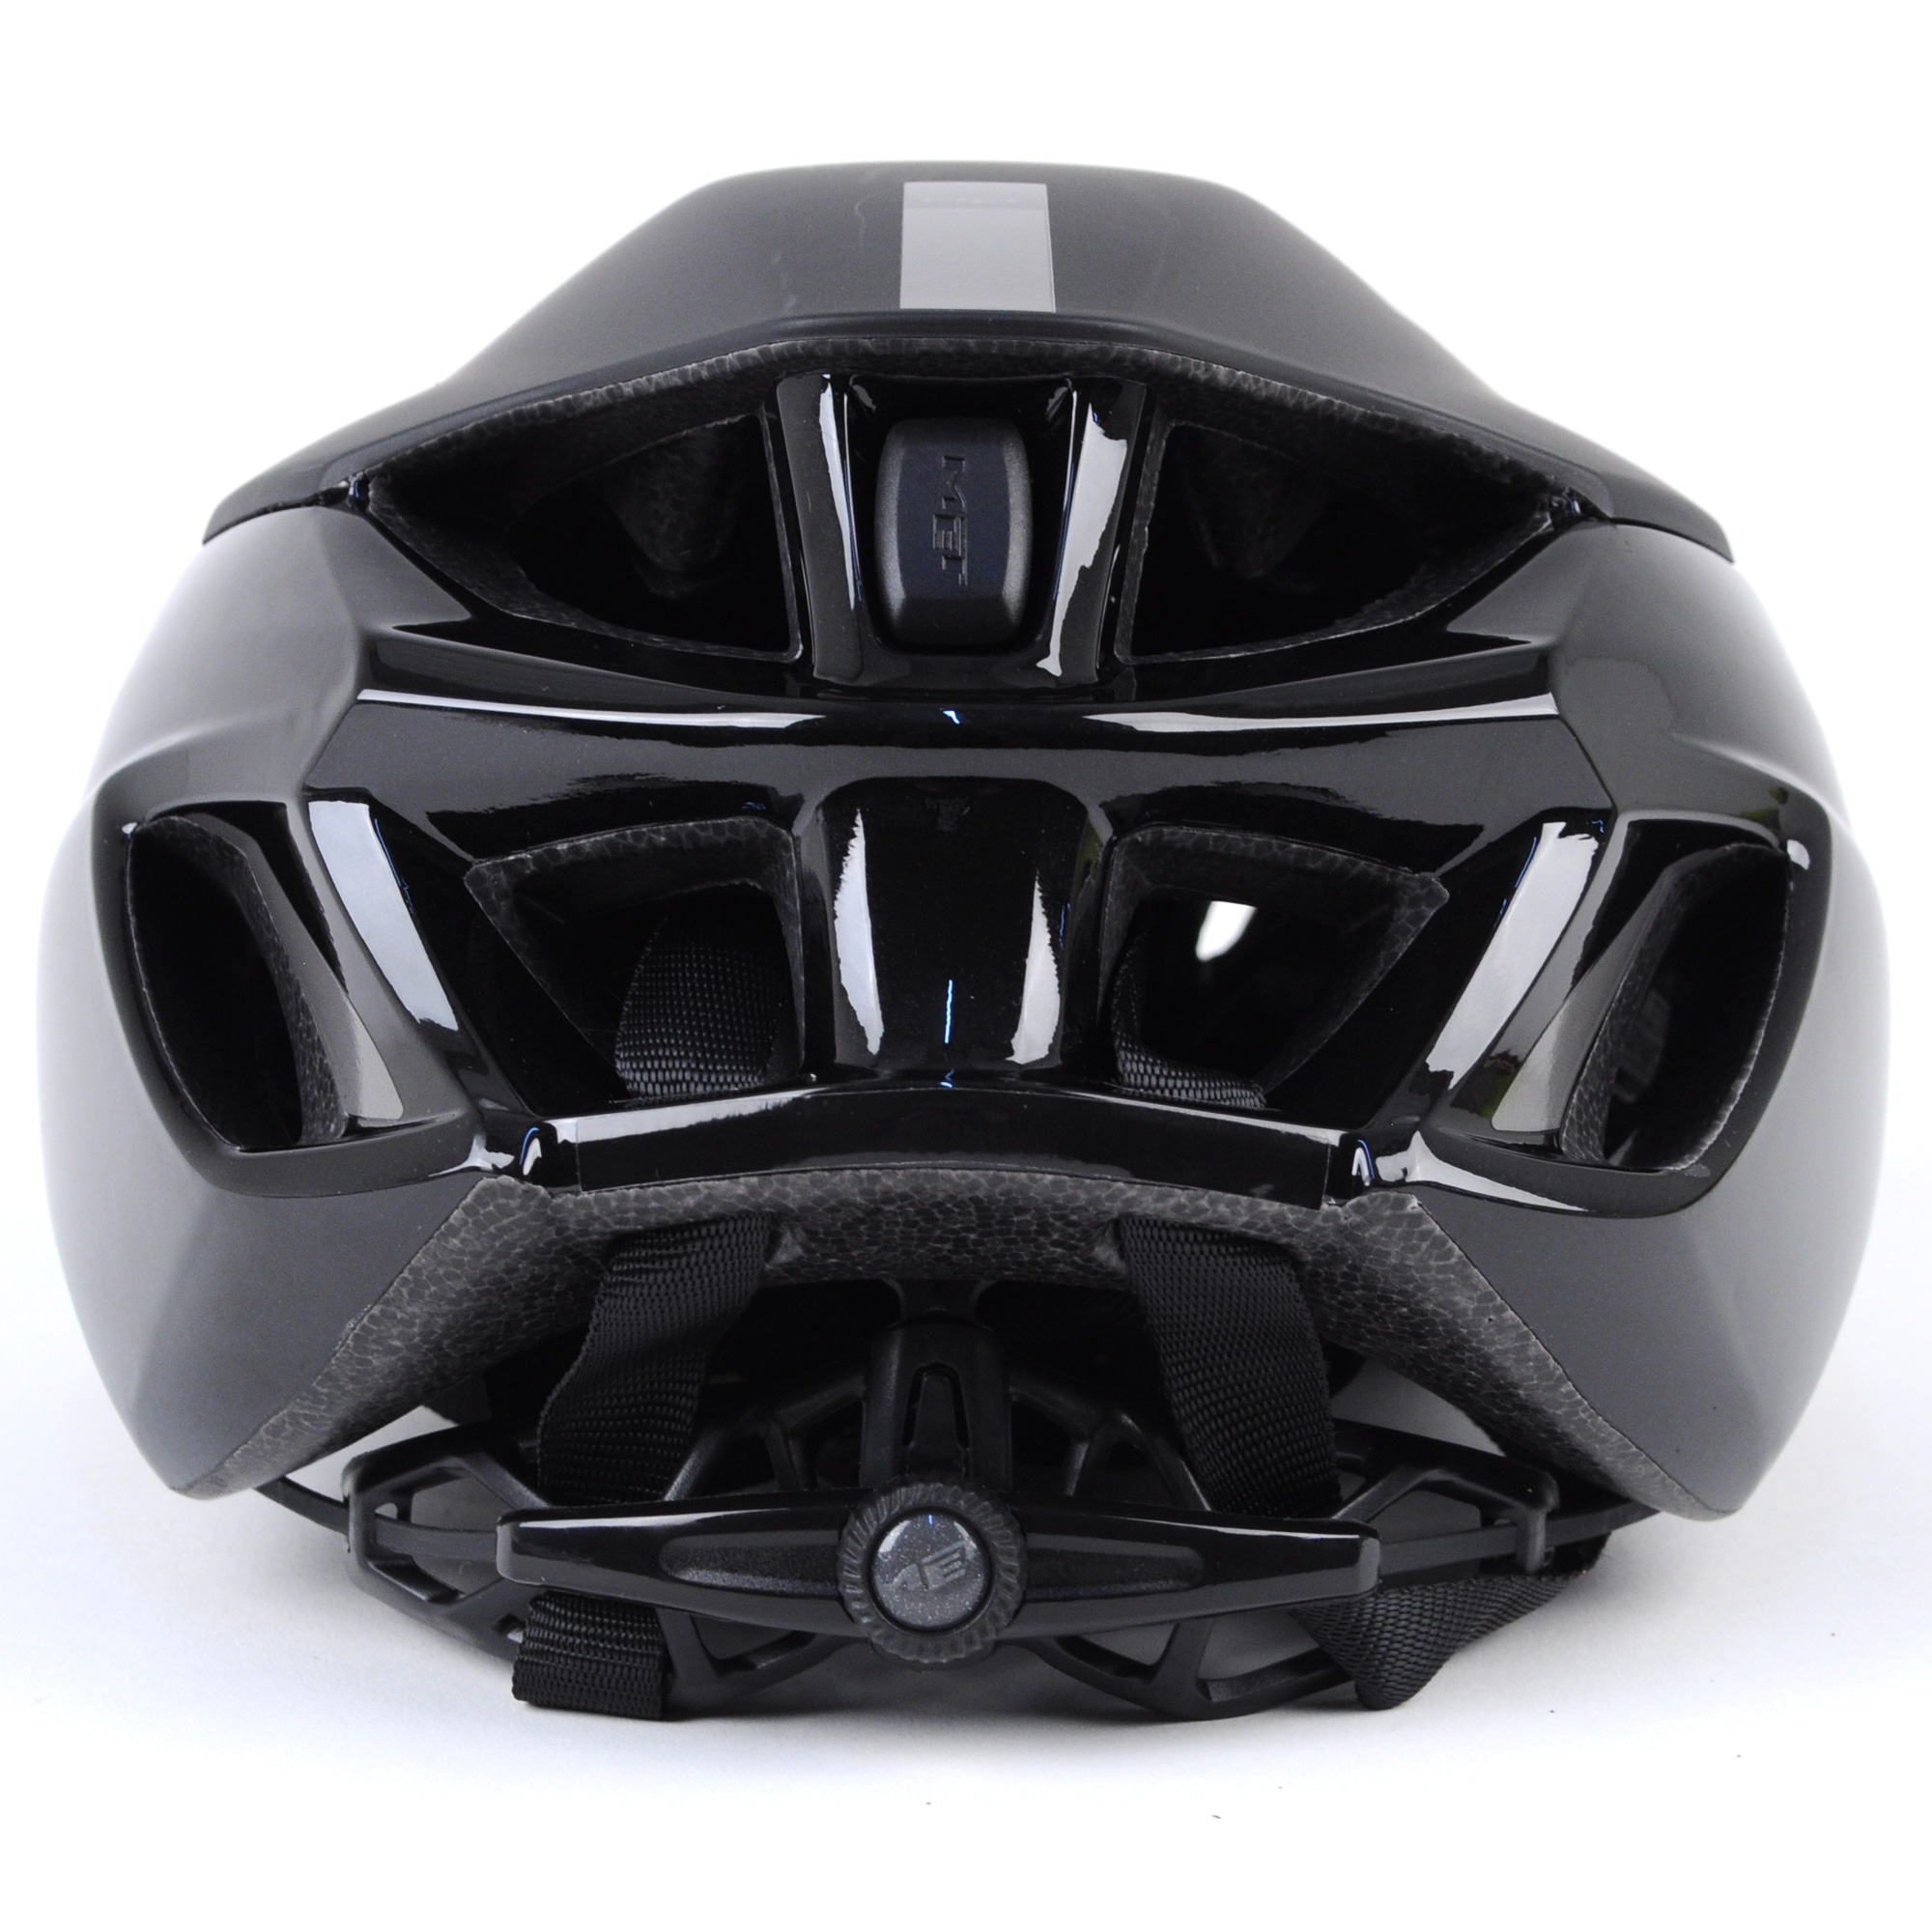 MET Manta Road Bike Helmet // Matte Black // Large | eBay